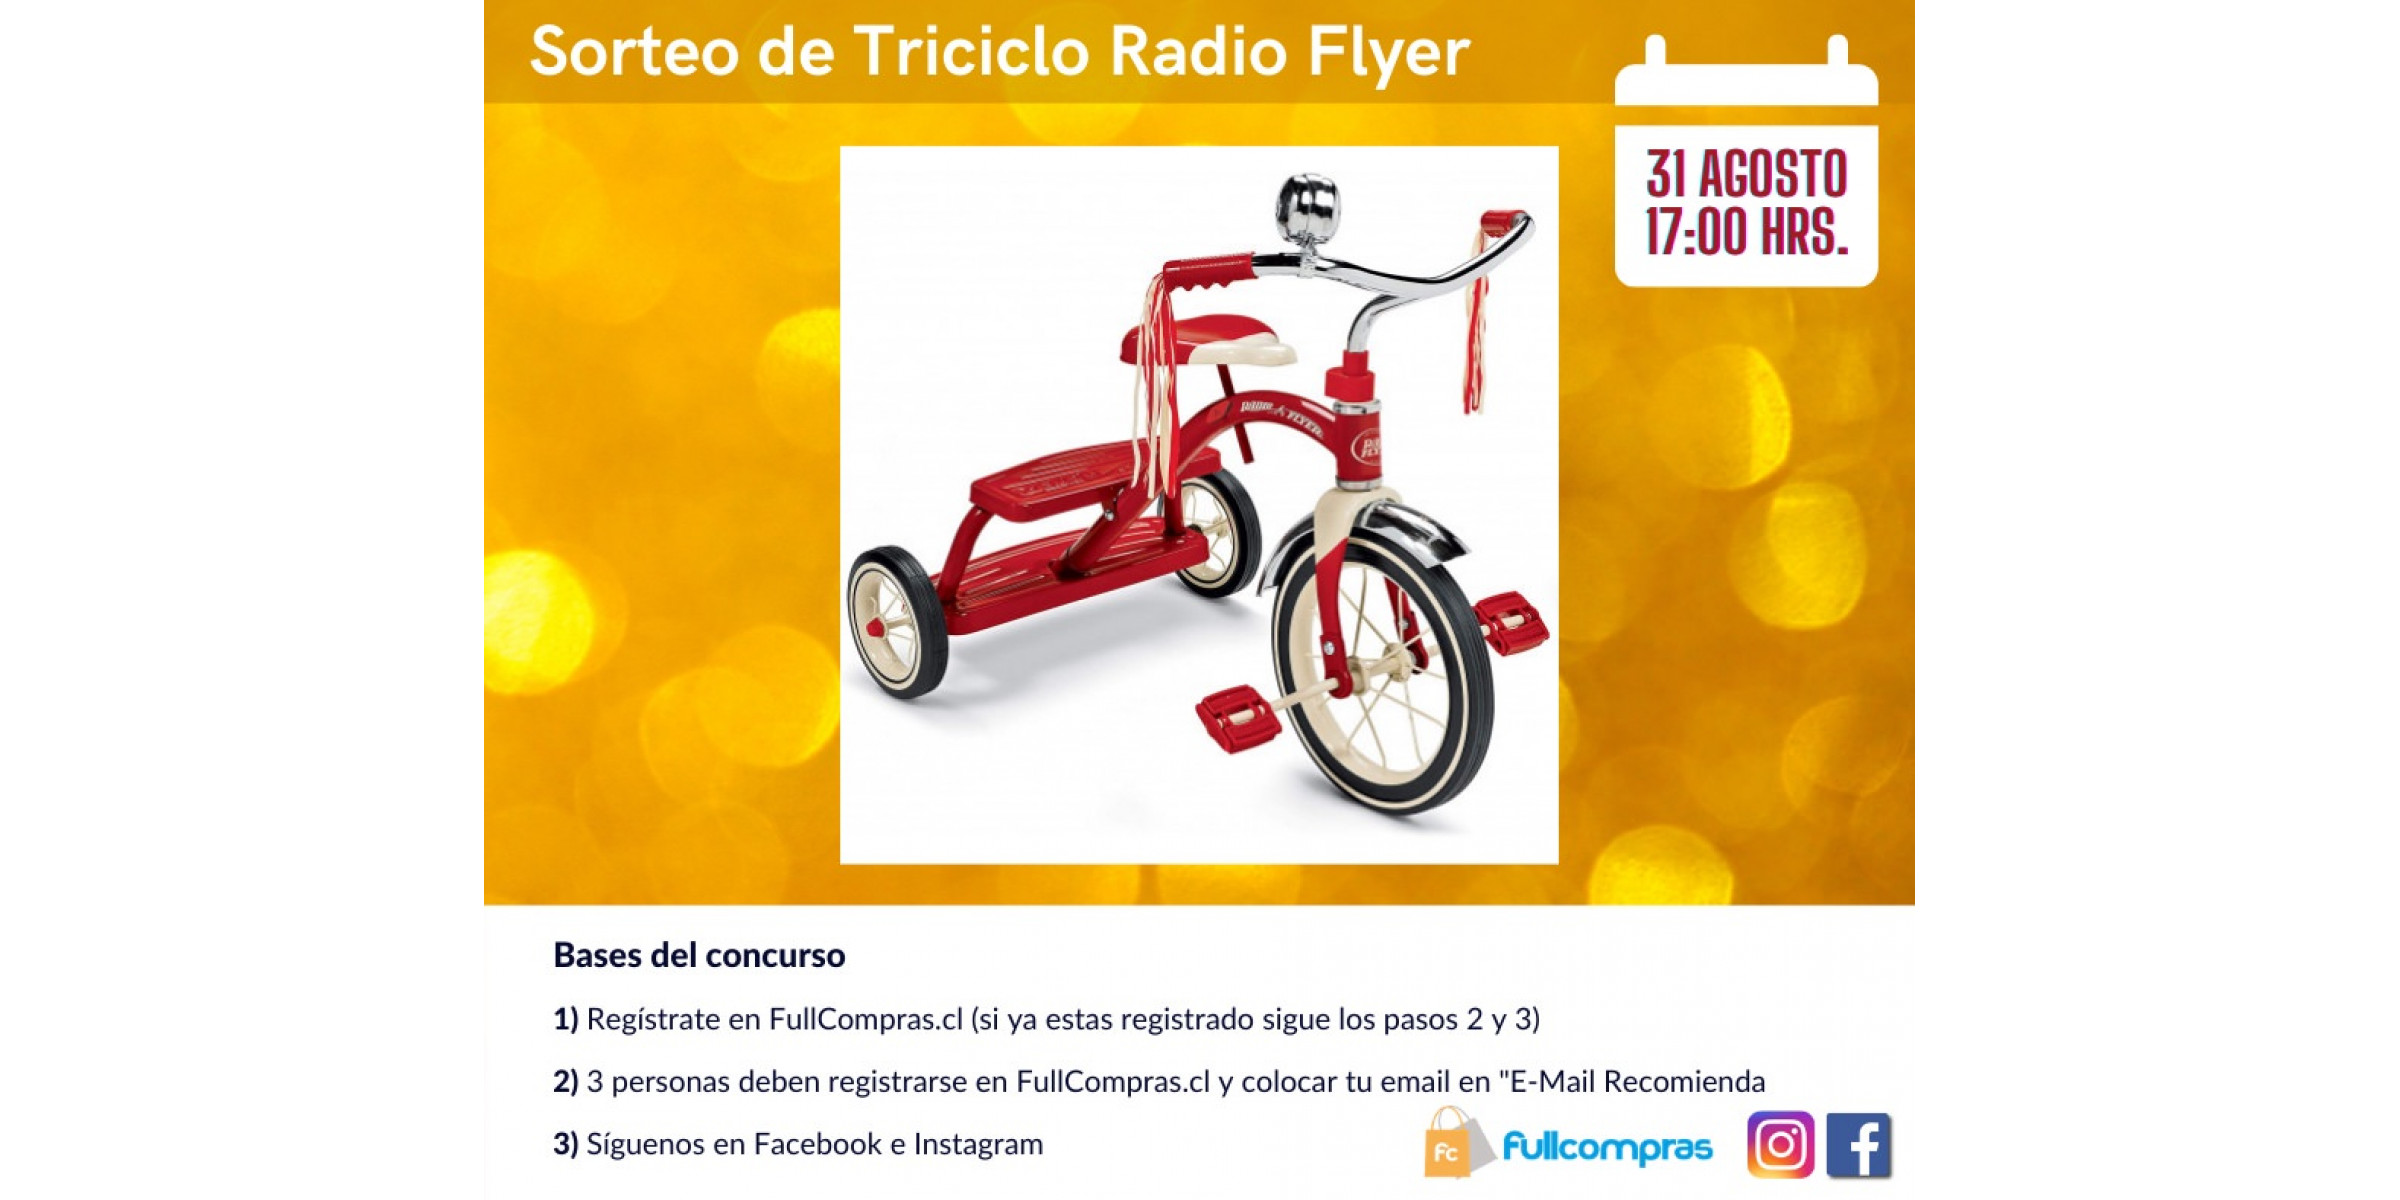 Sorteo de Triciclo Radio Flyer | 31 Agosto 2021 | 17:00 HRS.